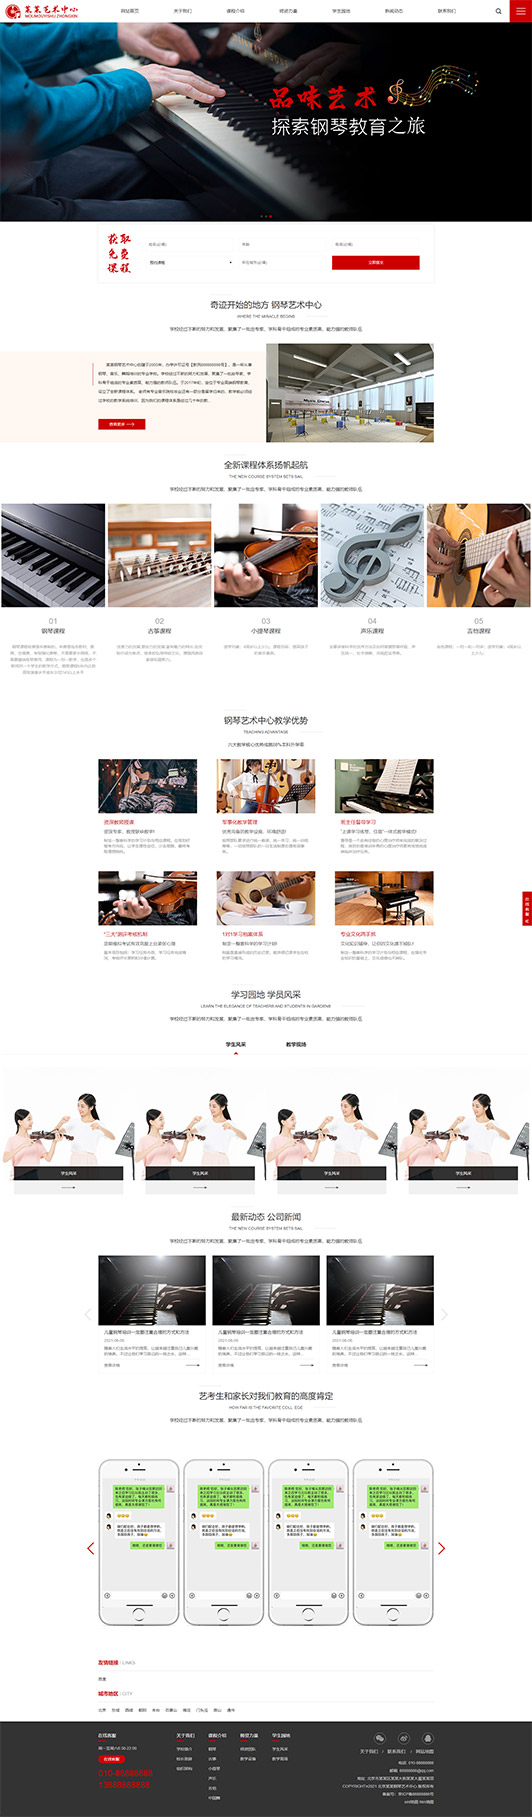 锦州钢琴艺术培训公司响应式企业网站